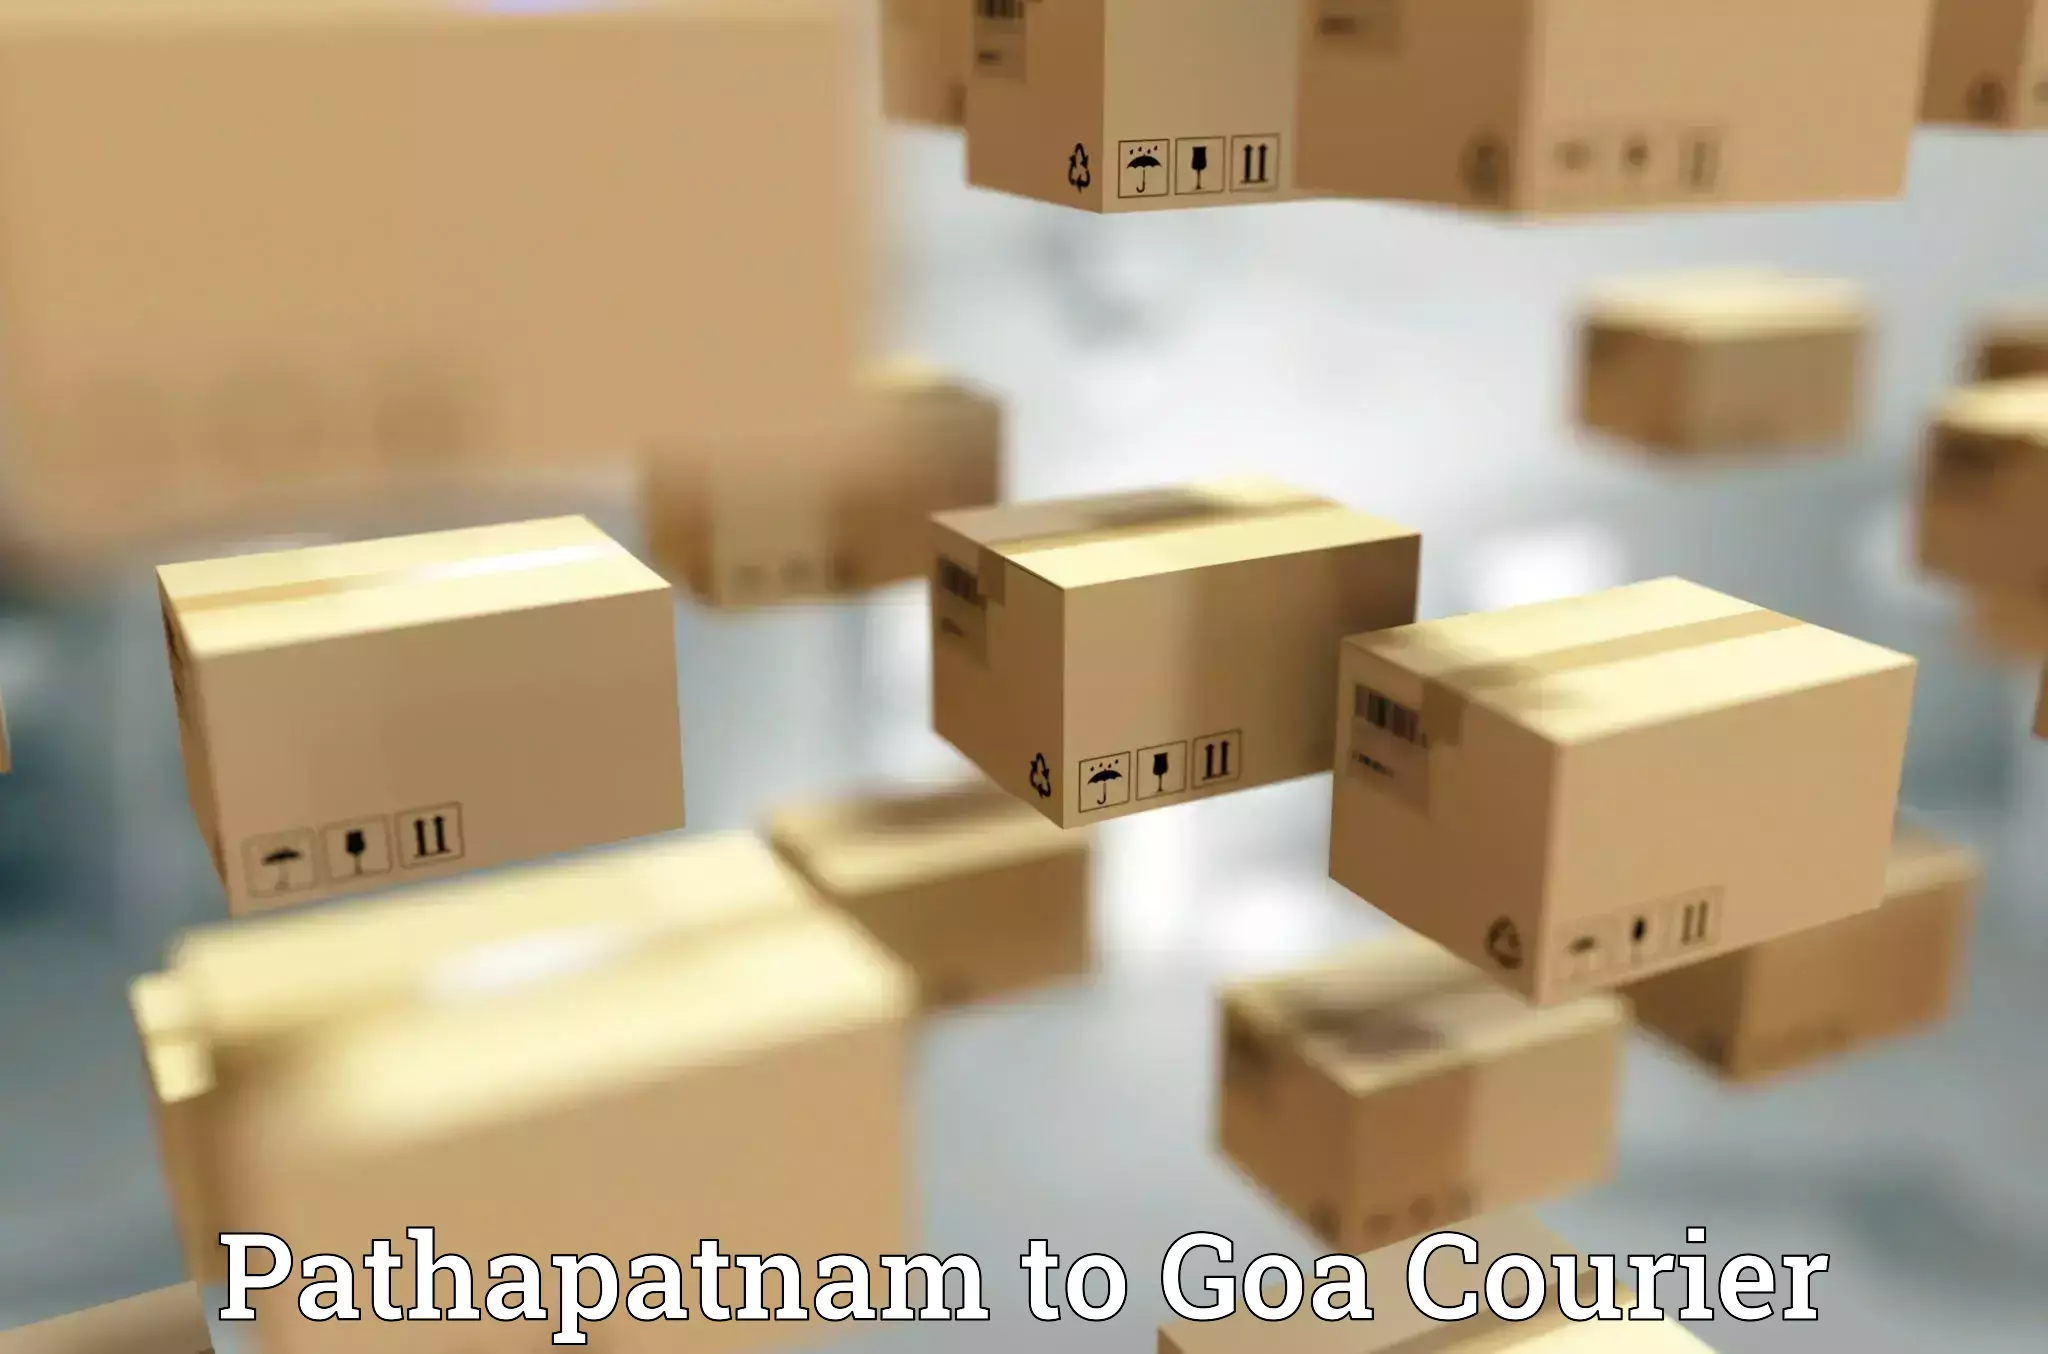 Express package handling Pathapatnam to Bicholim